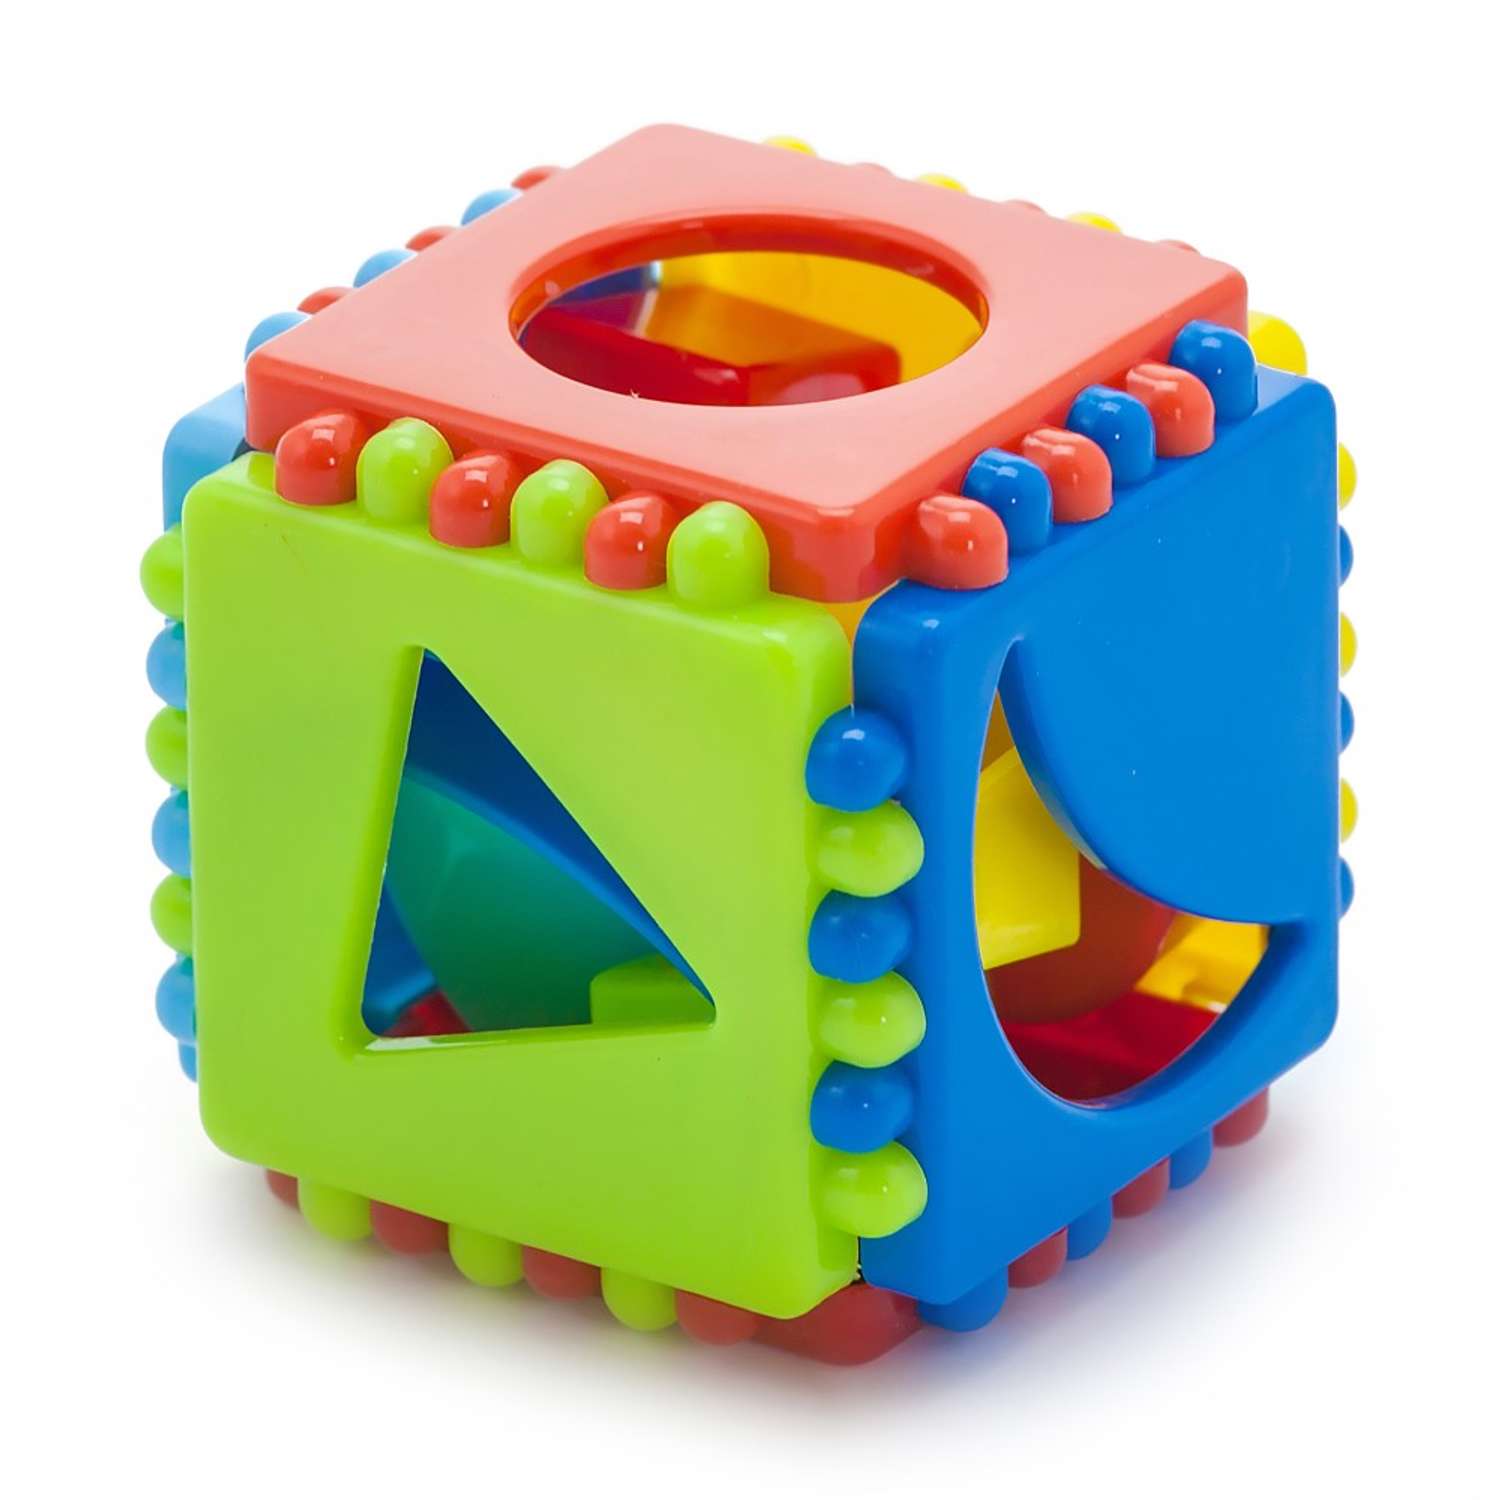 Развивающие игрушки БИПЛАНТ конструктор для малышей Кноп-Кнопыч 114 деталей + Сортер кубик малый + Команда КВА - фото 12